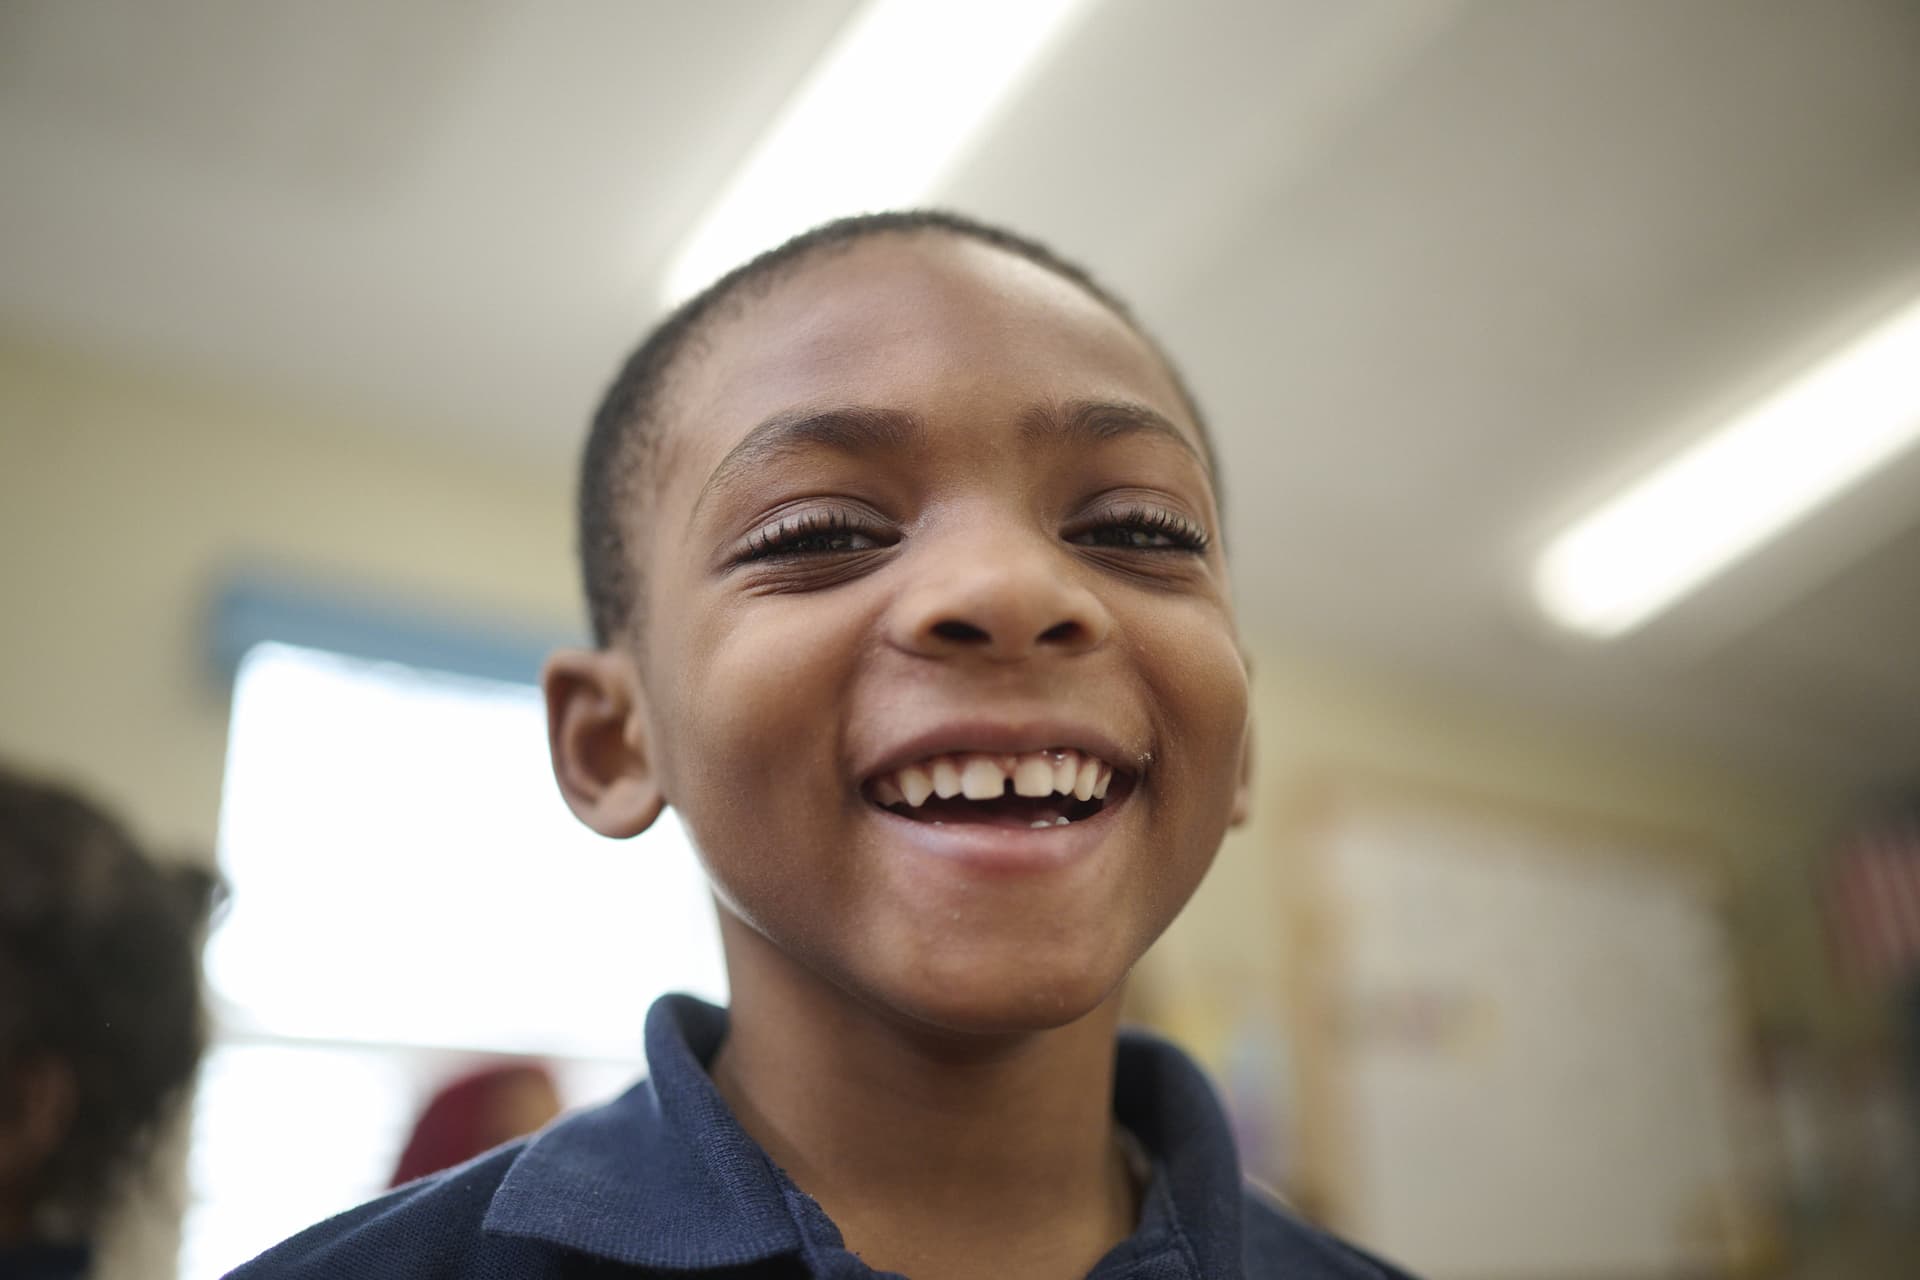 A young boy smiling at camera